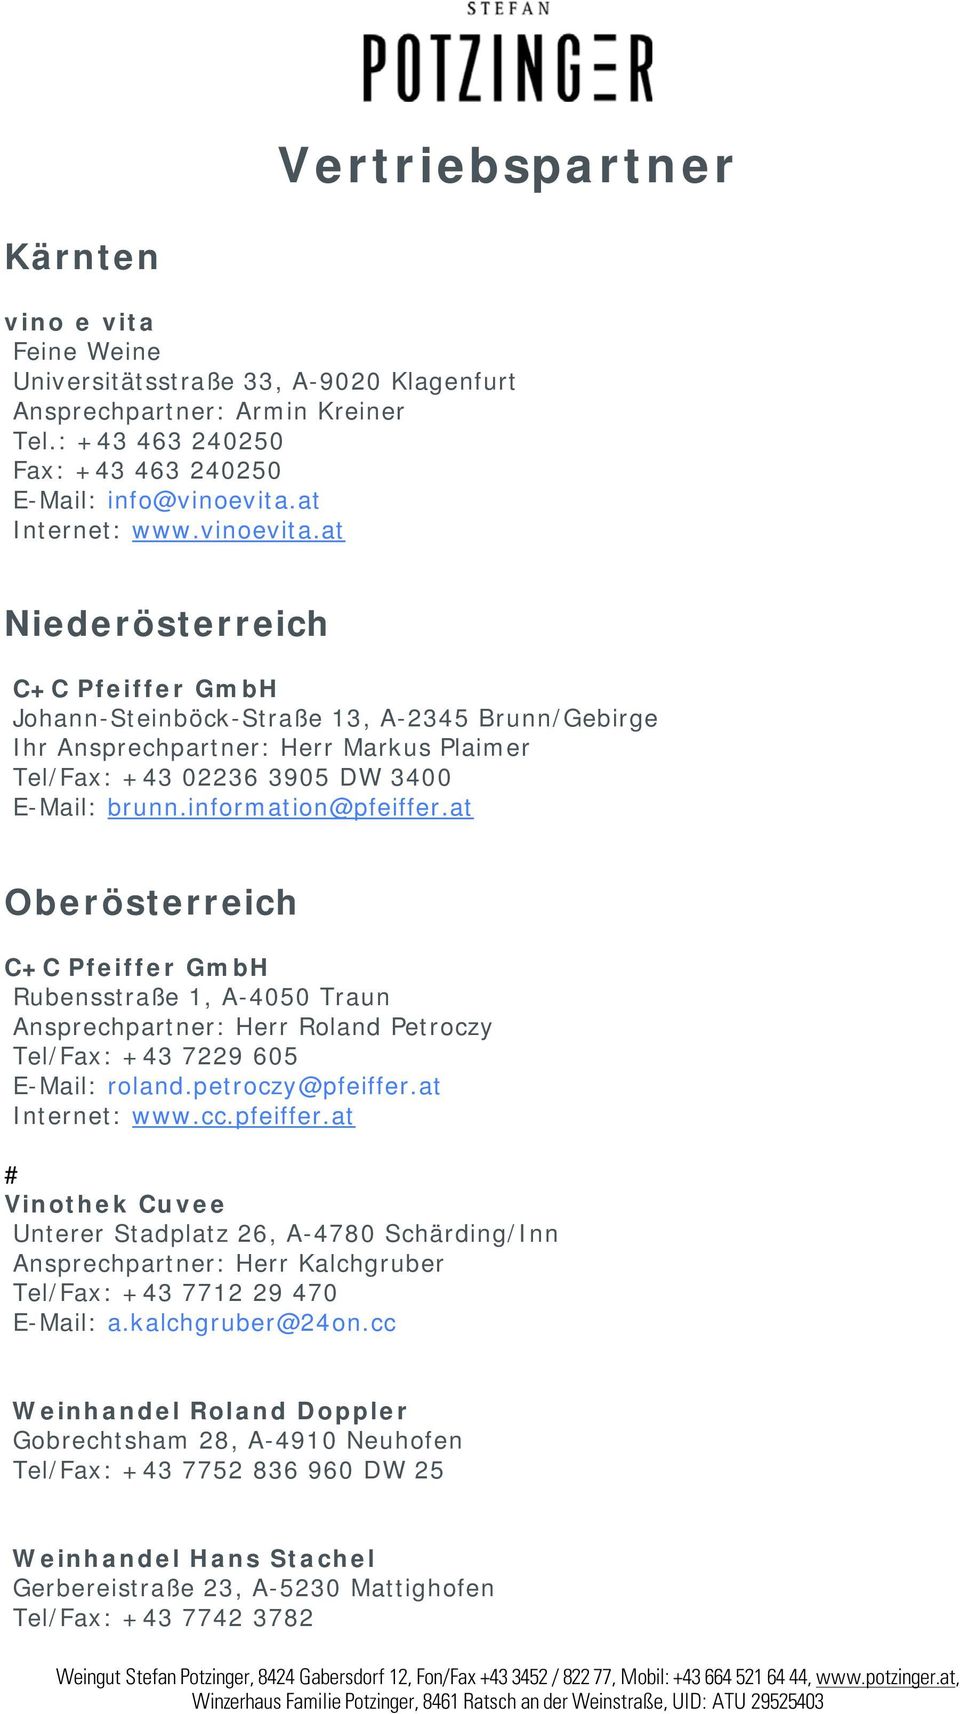 information@pfeiffer.at Oberösterreich Rubensstraße 1, A-4050 Traun Ansprechpartner: Herr Roland Petroczy Tel/Fax: +43 7229 605 E-Mail: roland.petroczy@pfeiffer.